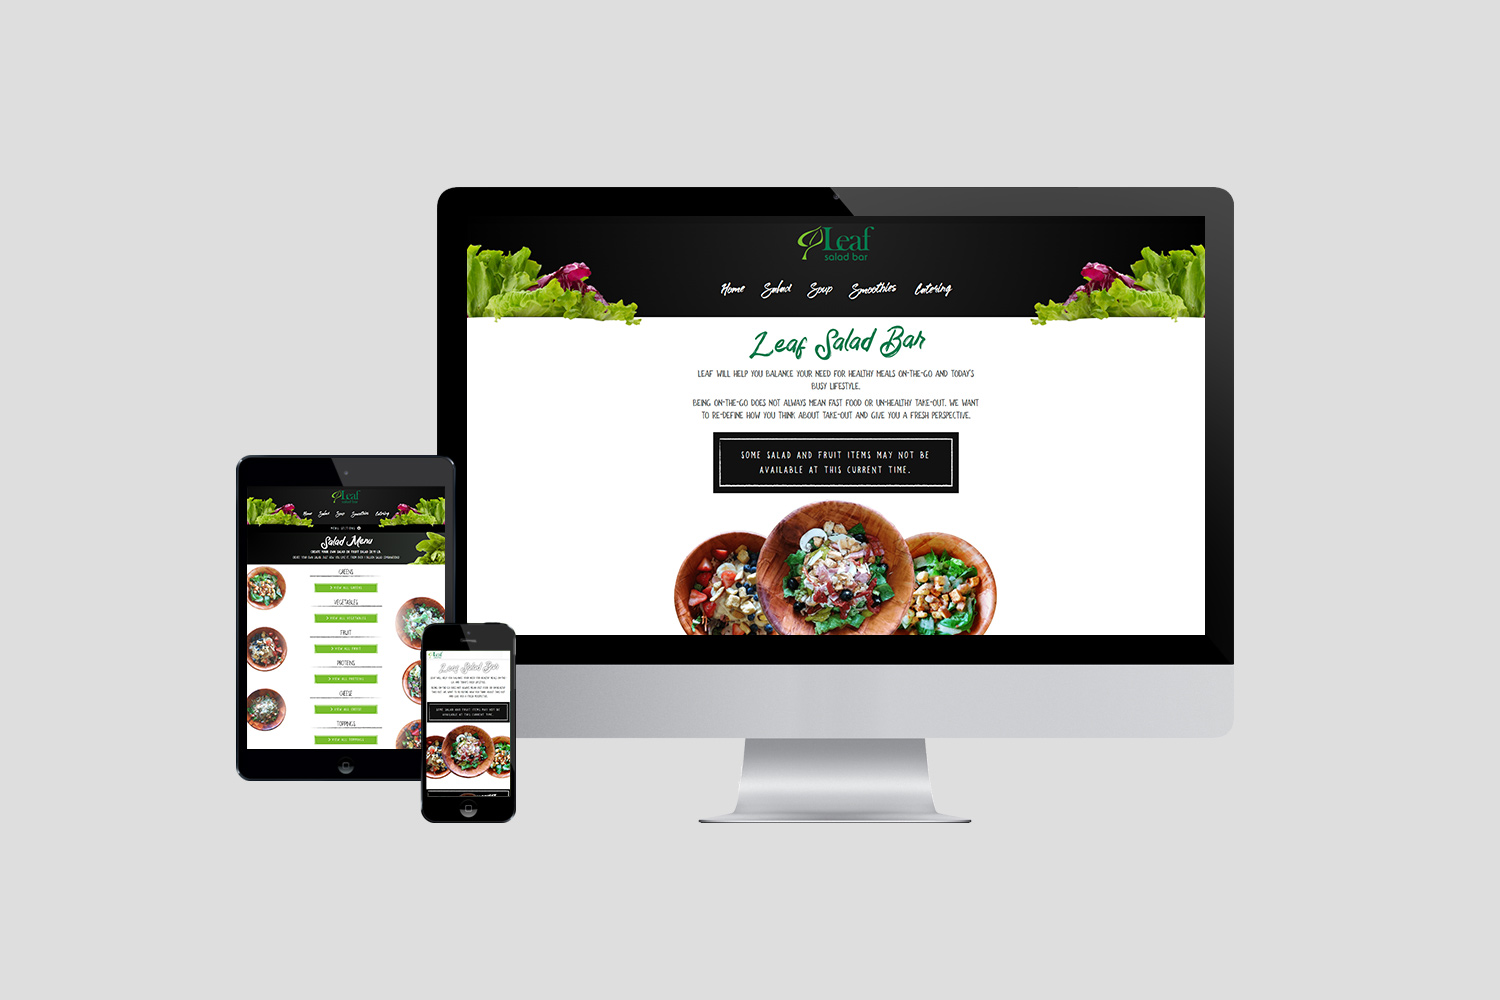 Leaf Salad Bar Website Design